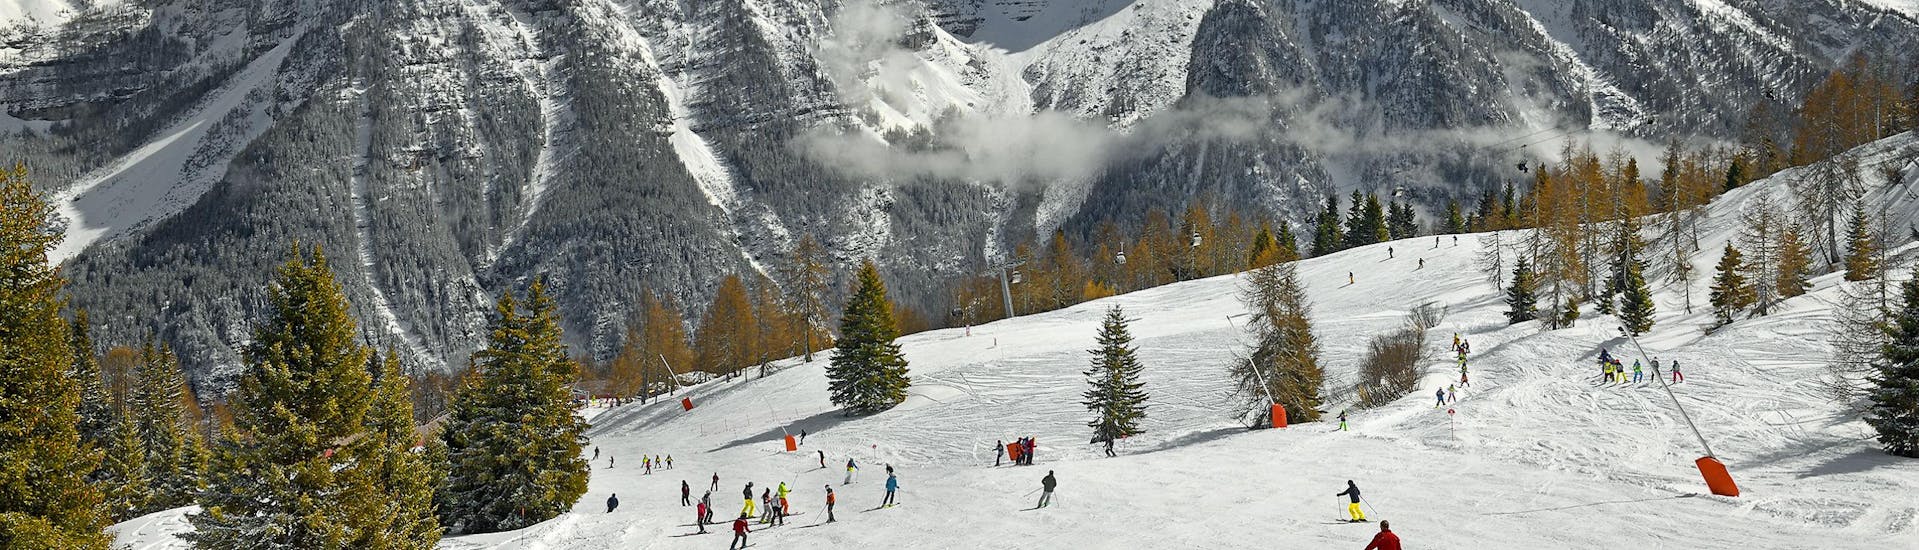 Una meravigliosa vista sulle Dolomiti dalle piste di Folgarida dove le scuole di sci locali tengono le loro lezioni di sci per chi desidera imparare a sciare.